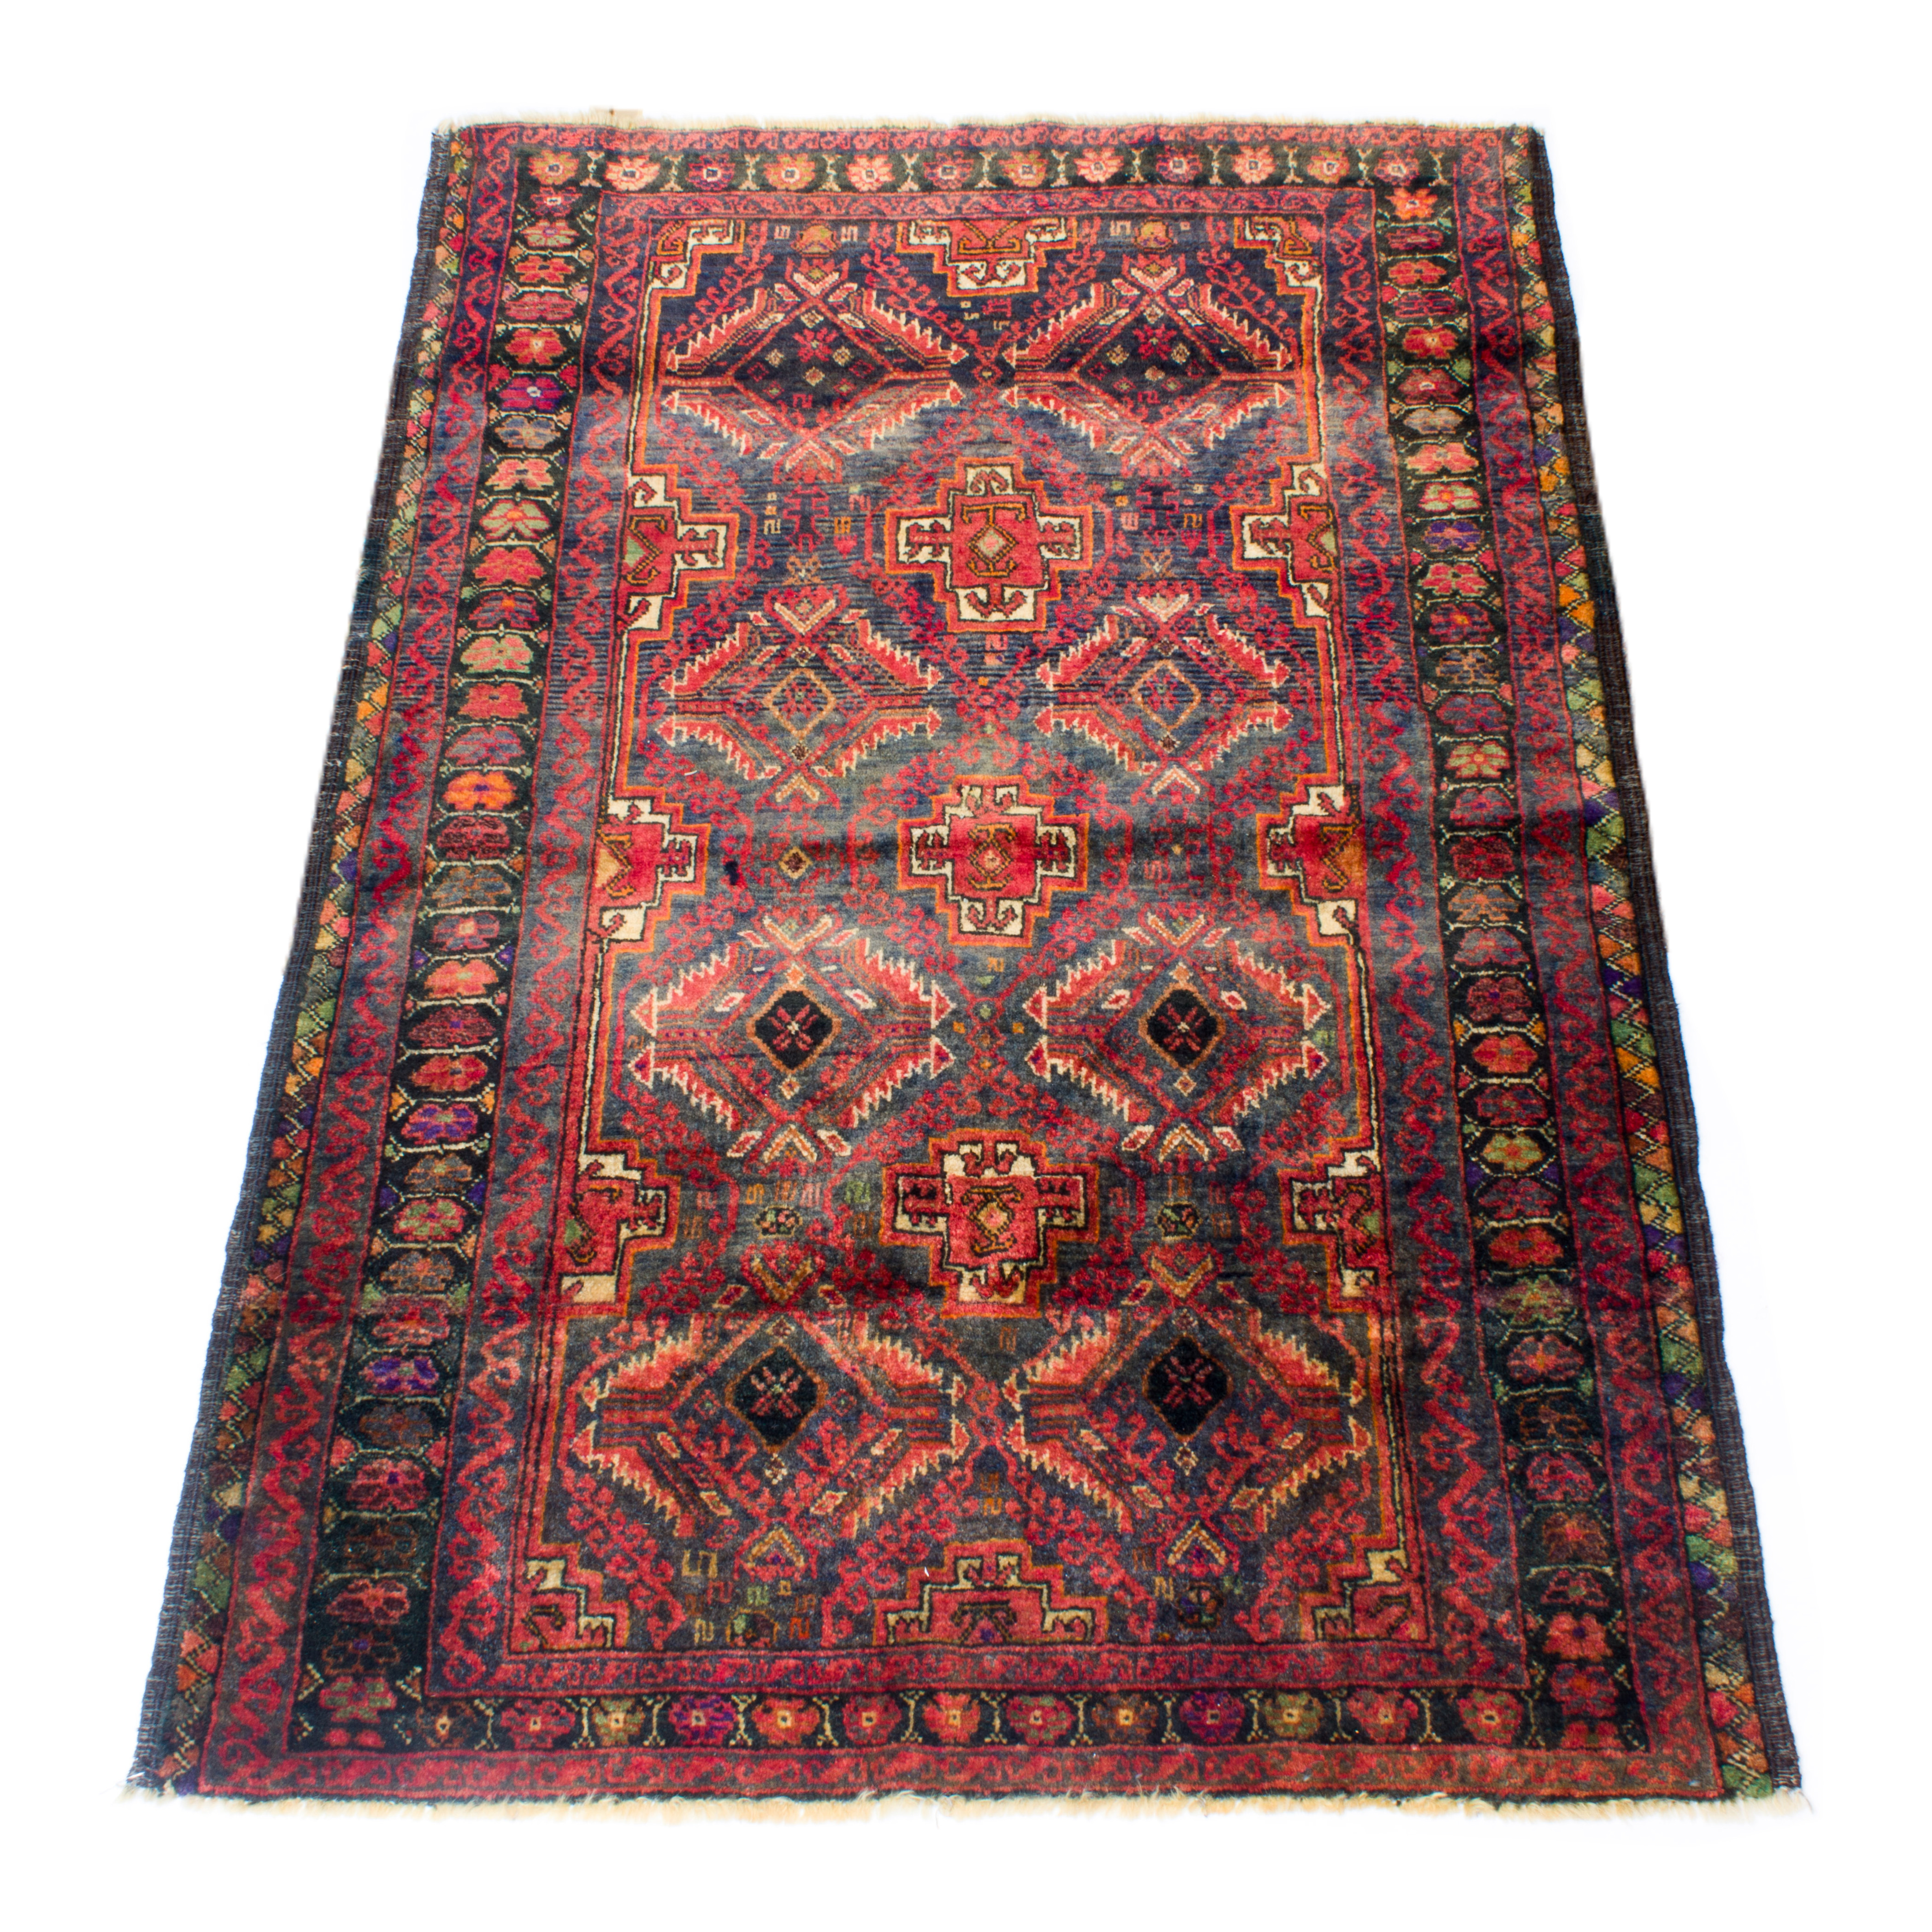 A BALOUCH CARPET A Balouch carpet,